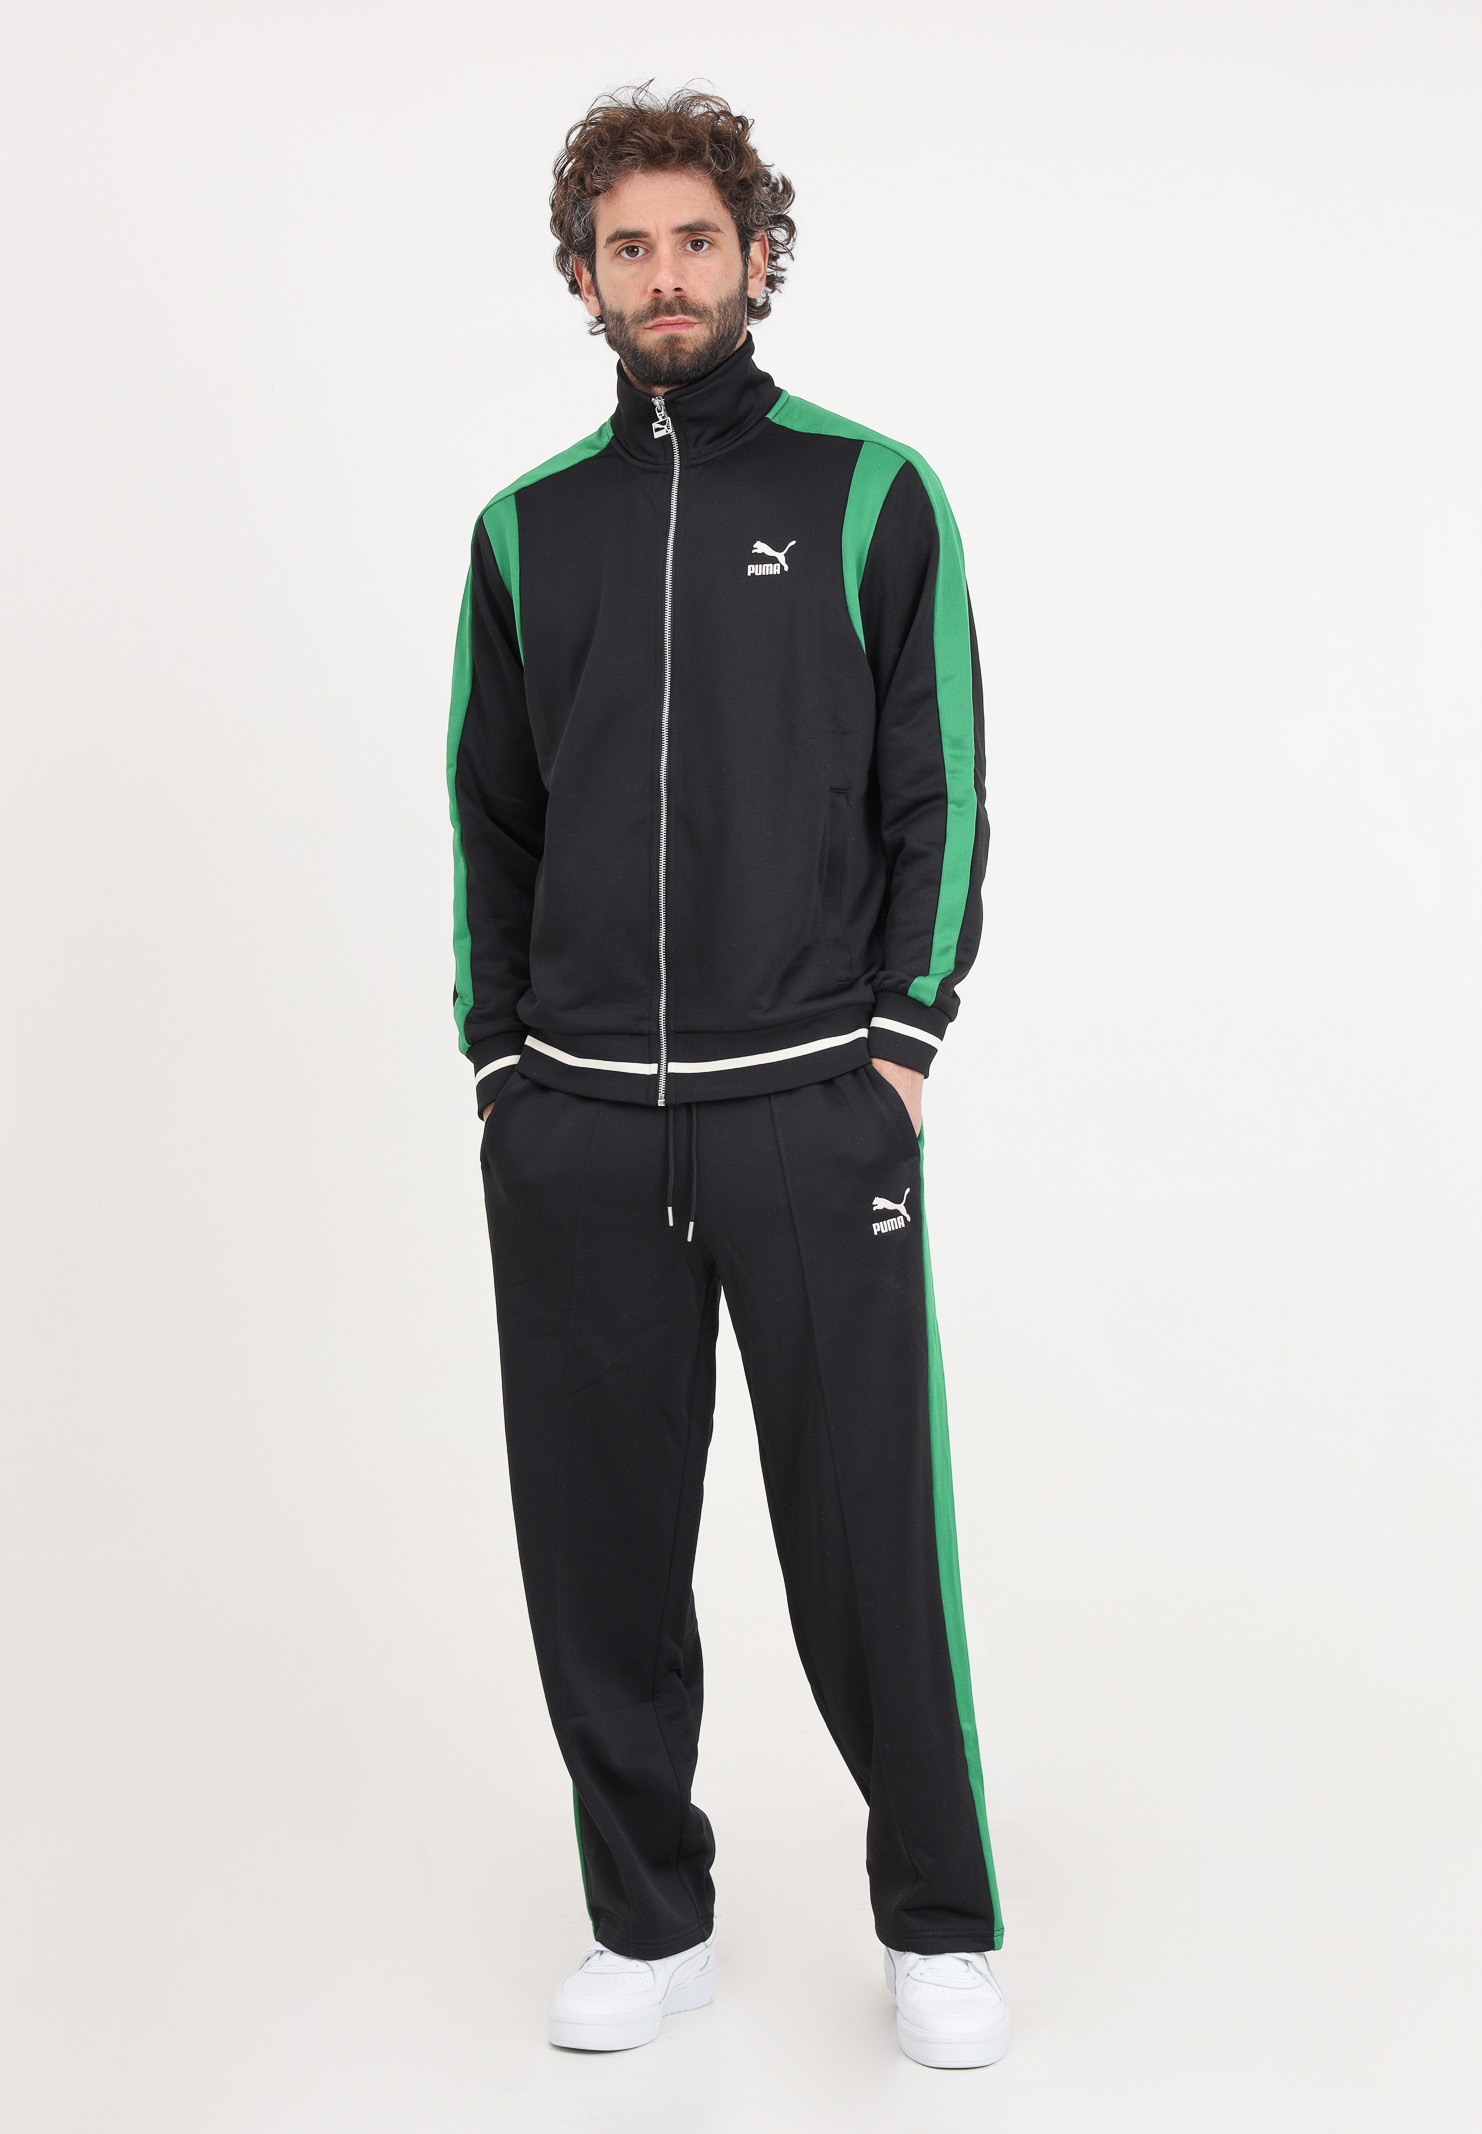 Pantaloni da uomo sportivi t7 verdi neri e bianchi